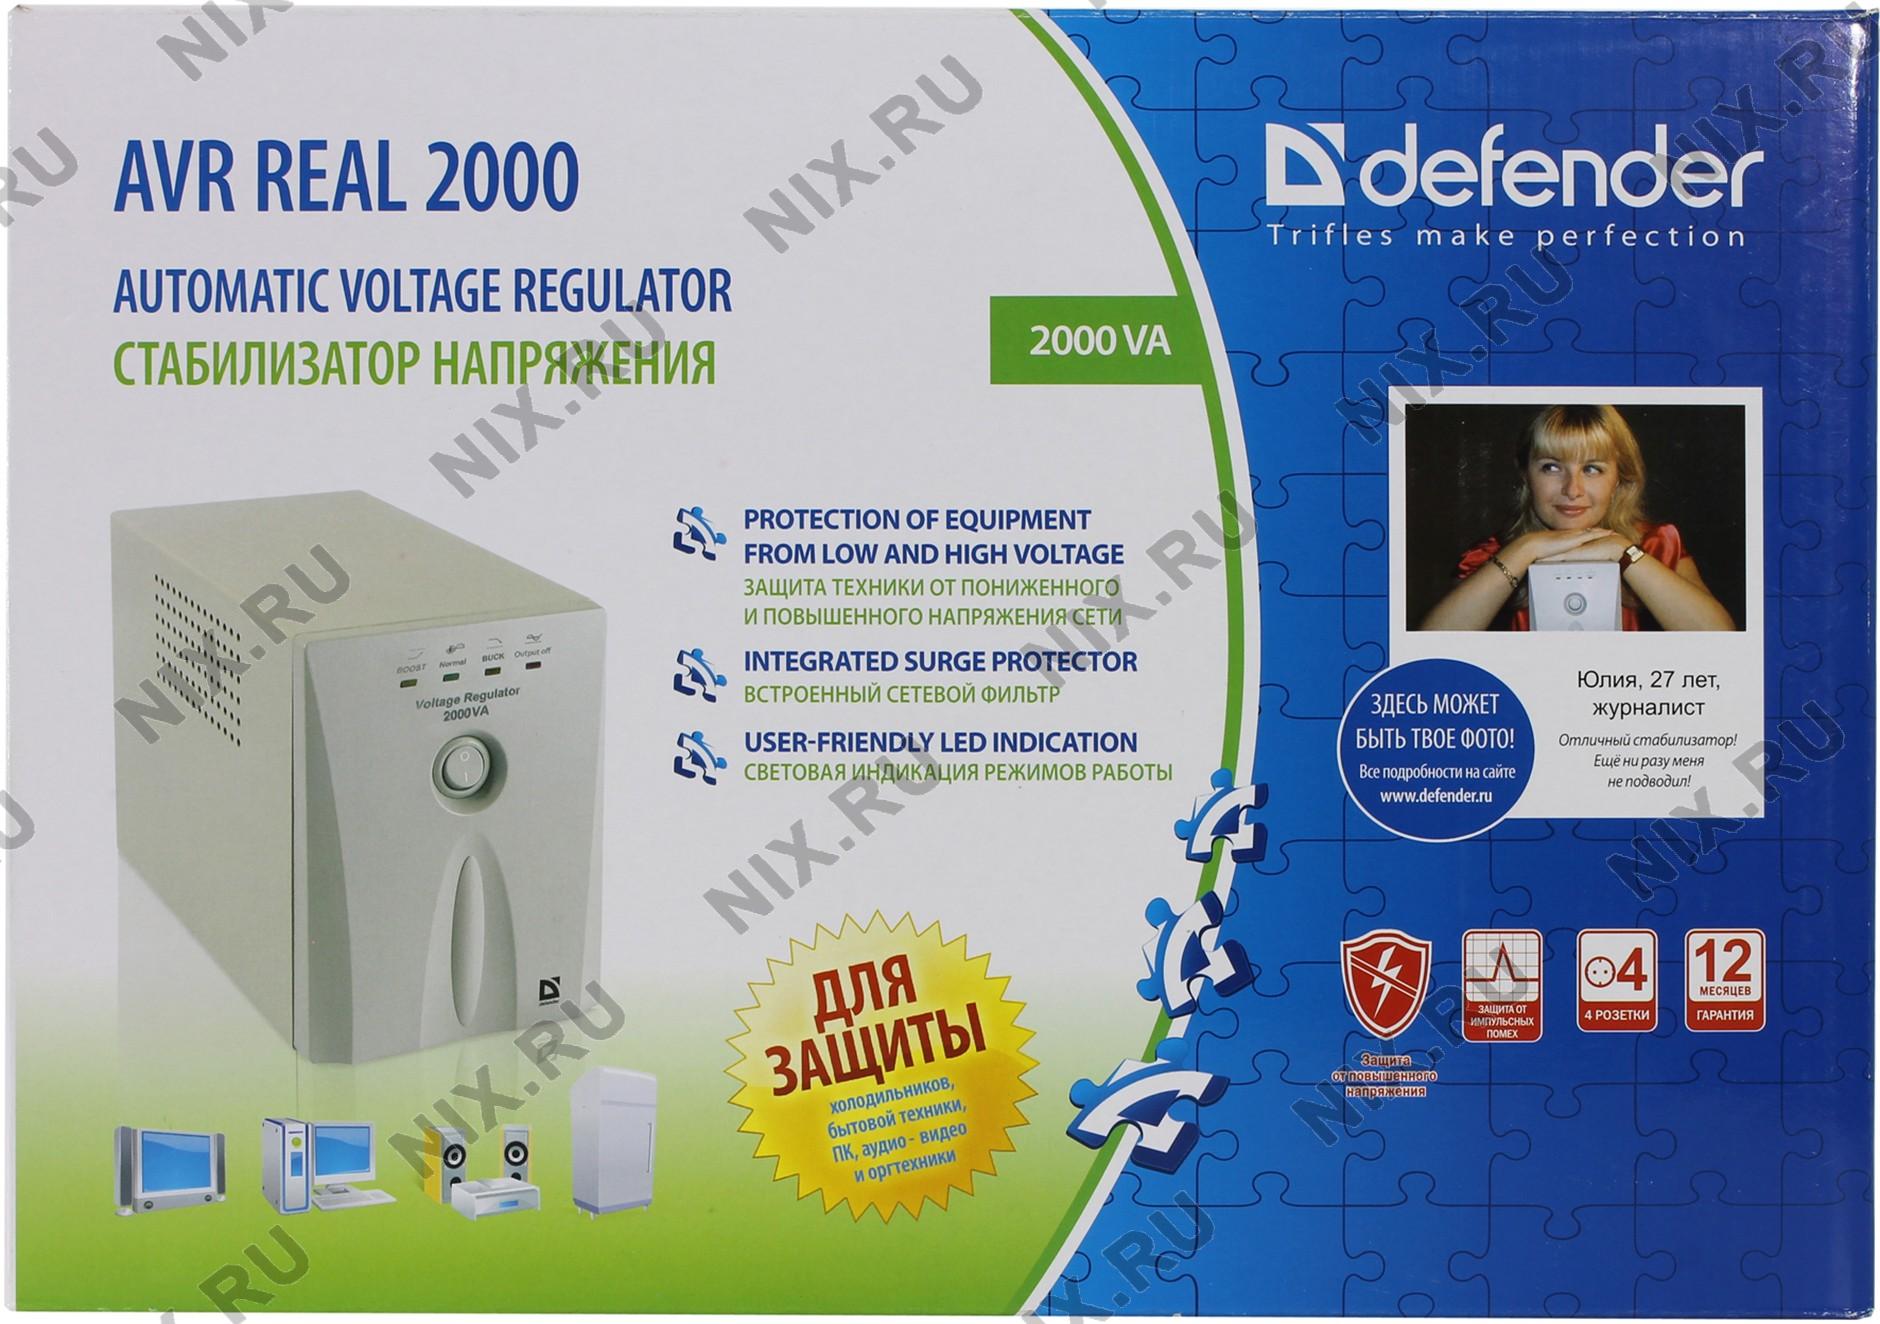 Defender real. Defender AVR real 2000 va. Стабилизатор напряжения Defender AVR real 2000va. Схема AVR real 600va. Defender Voltage Regulator 2000va.